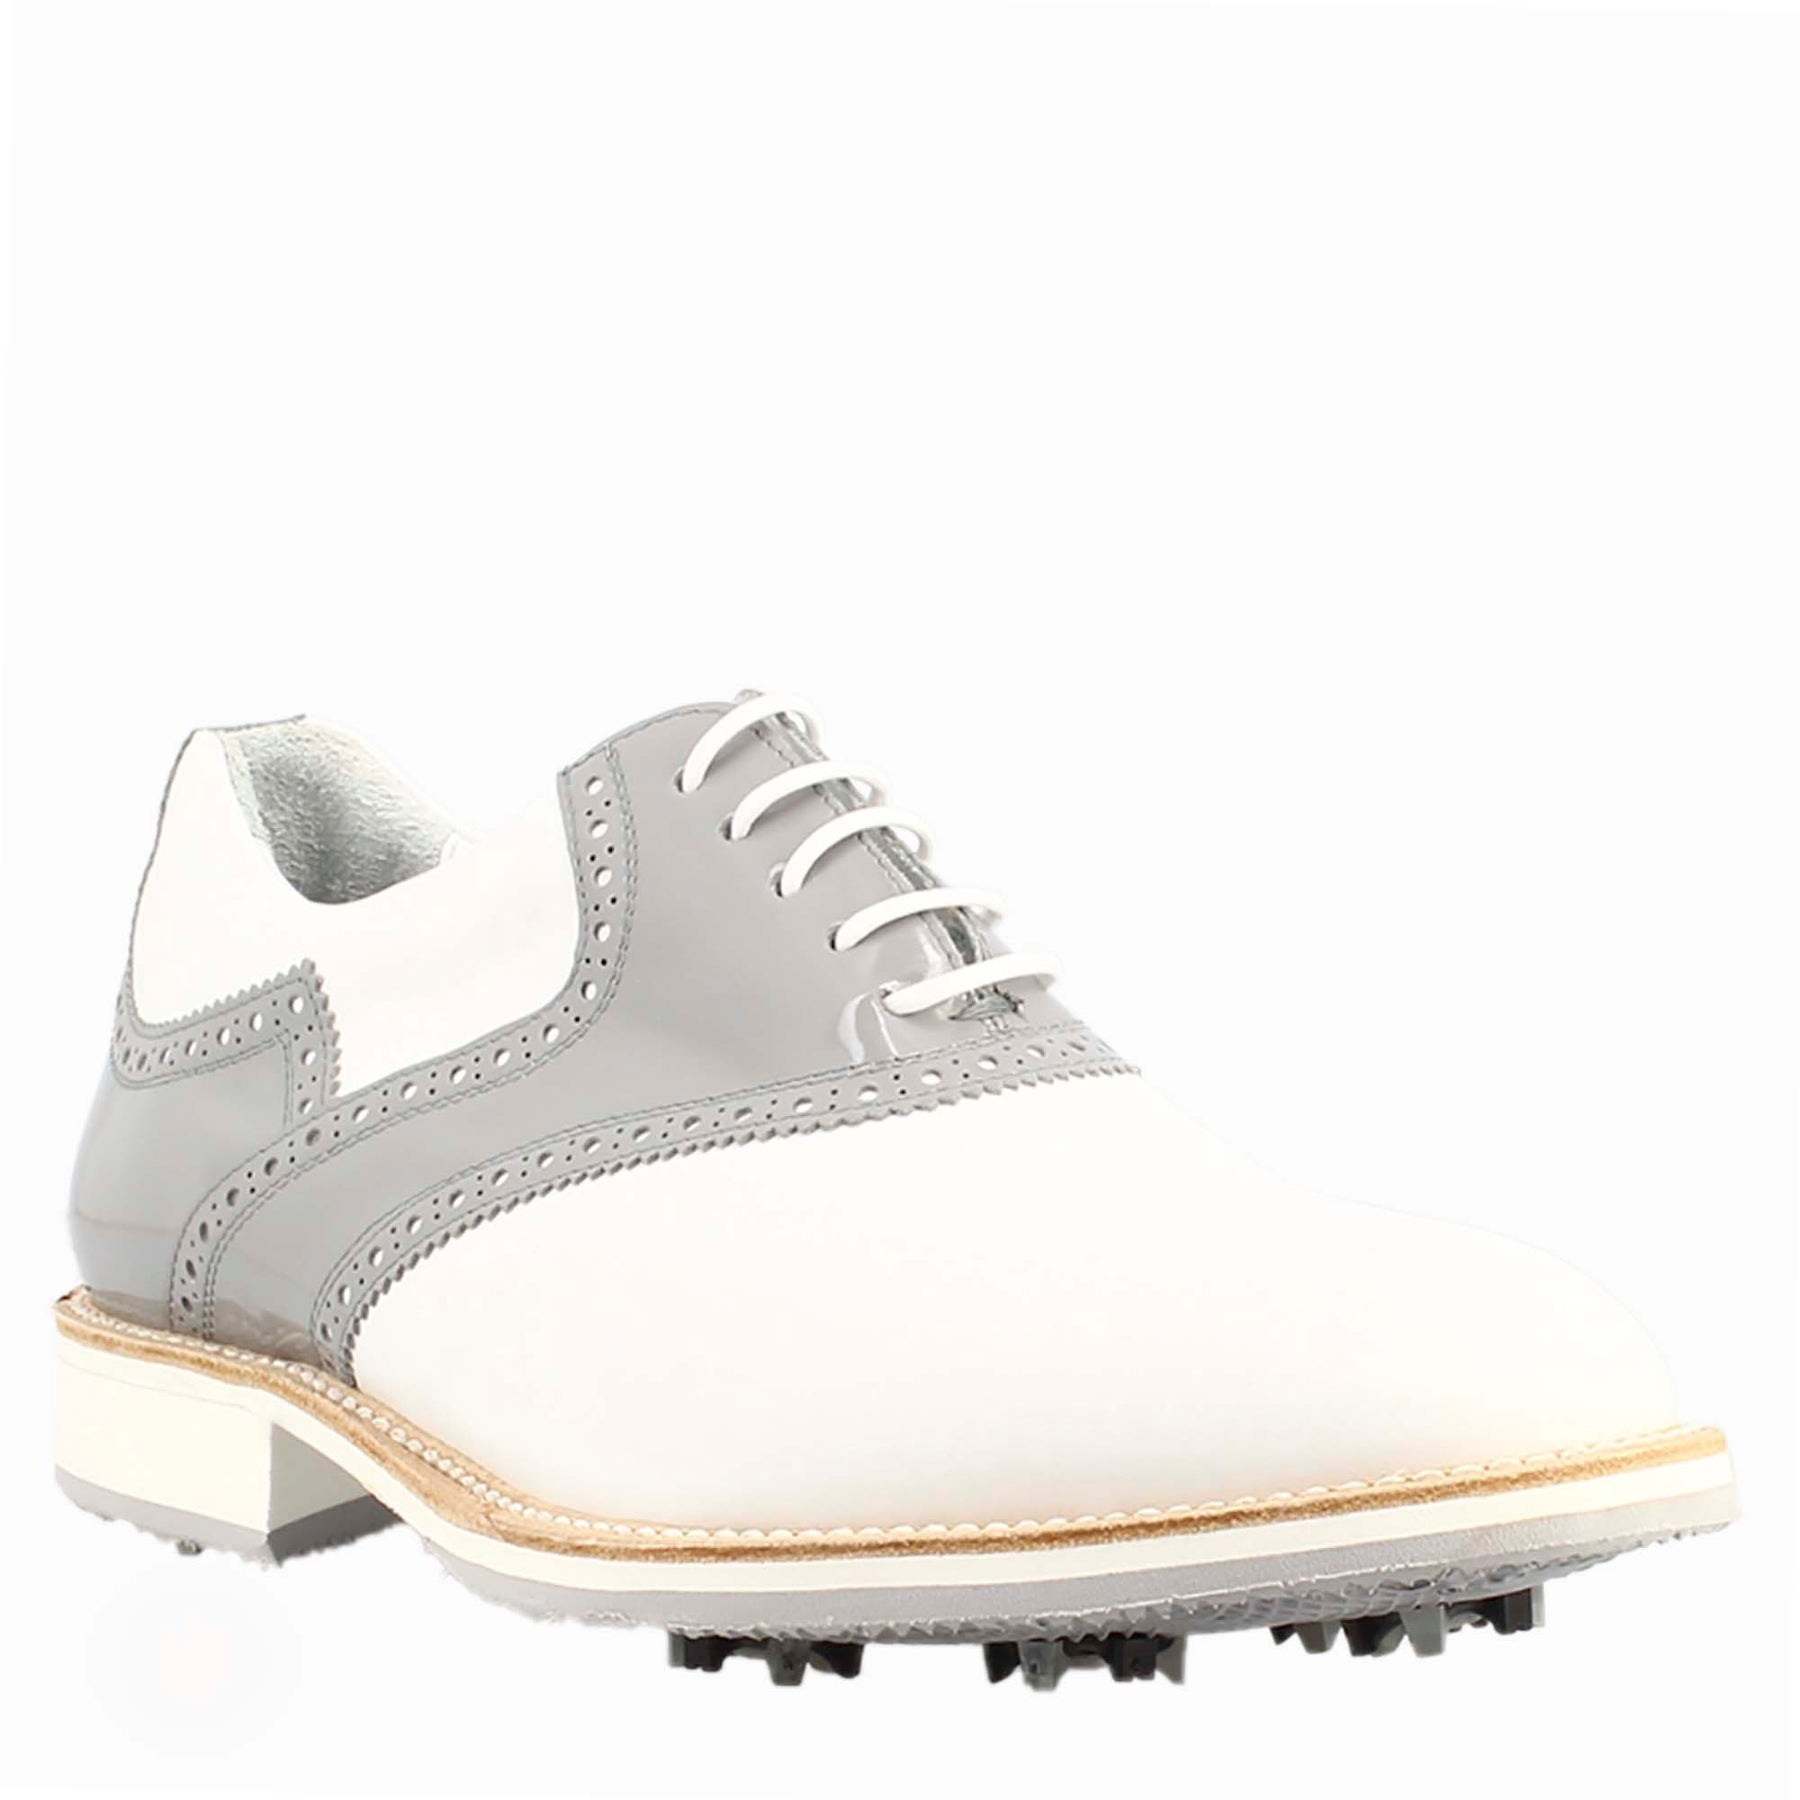 Damen-Golfschuhe aus weißem und grauem Leder mit handgefertigten Brogue-Details